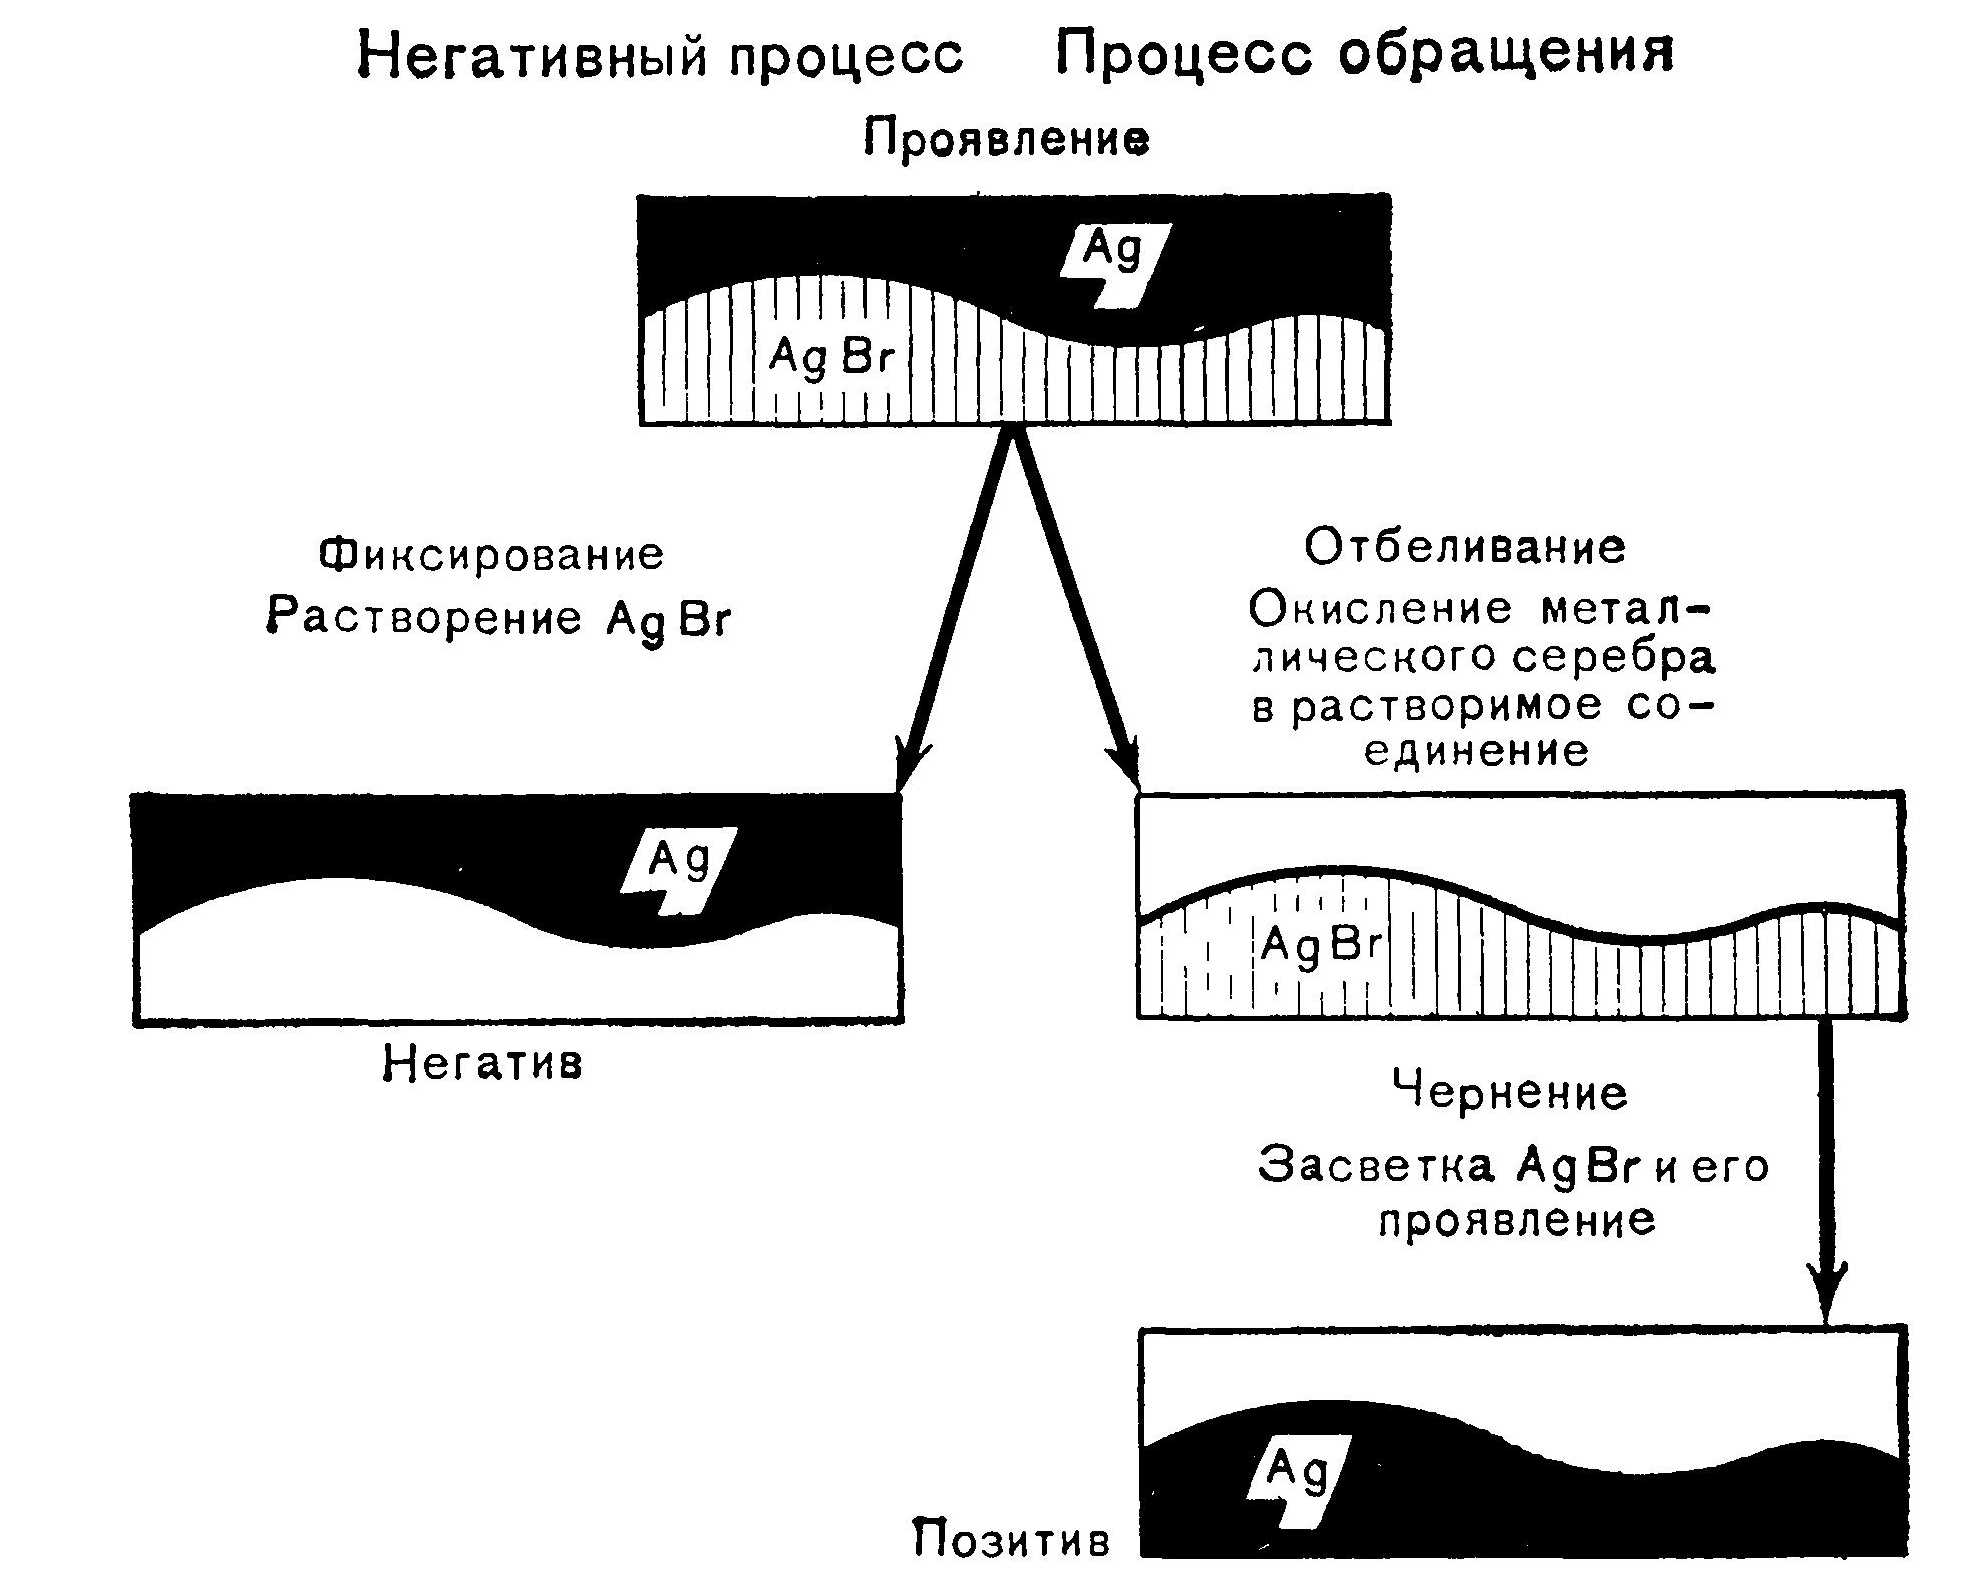 Схема процессов получения негативного и позитивного обращенного изображений на черно-белом фотоматериале